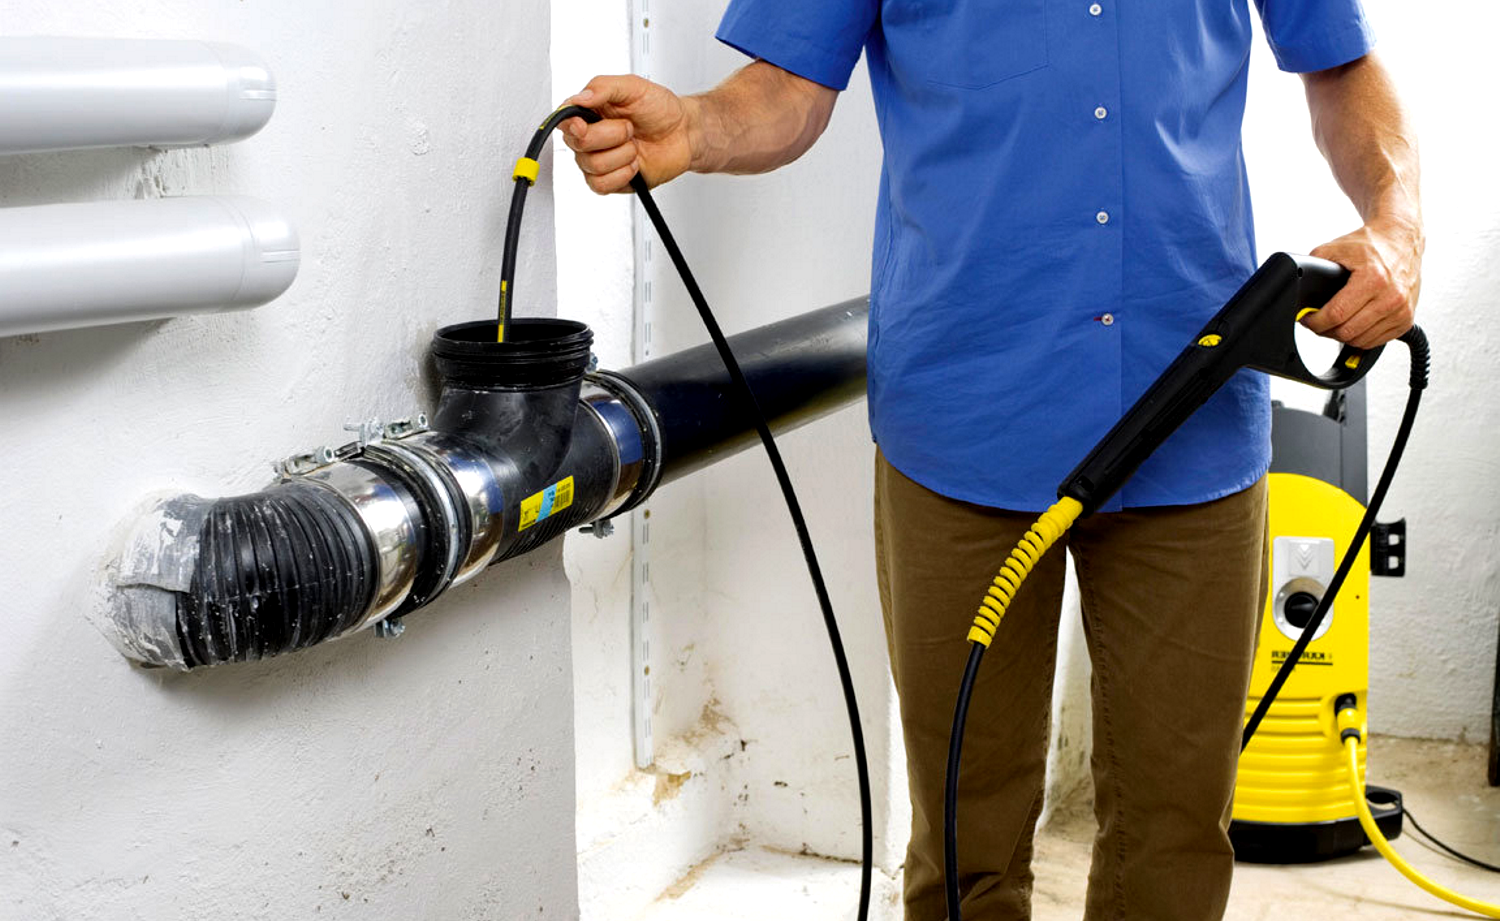 Как прочистить водопроводную трубу в домашних условиях